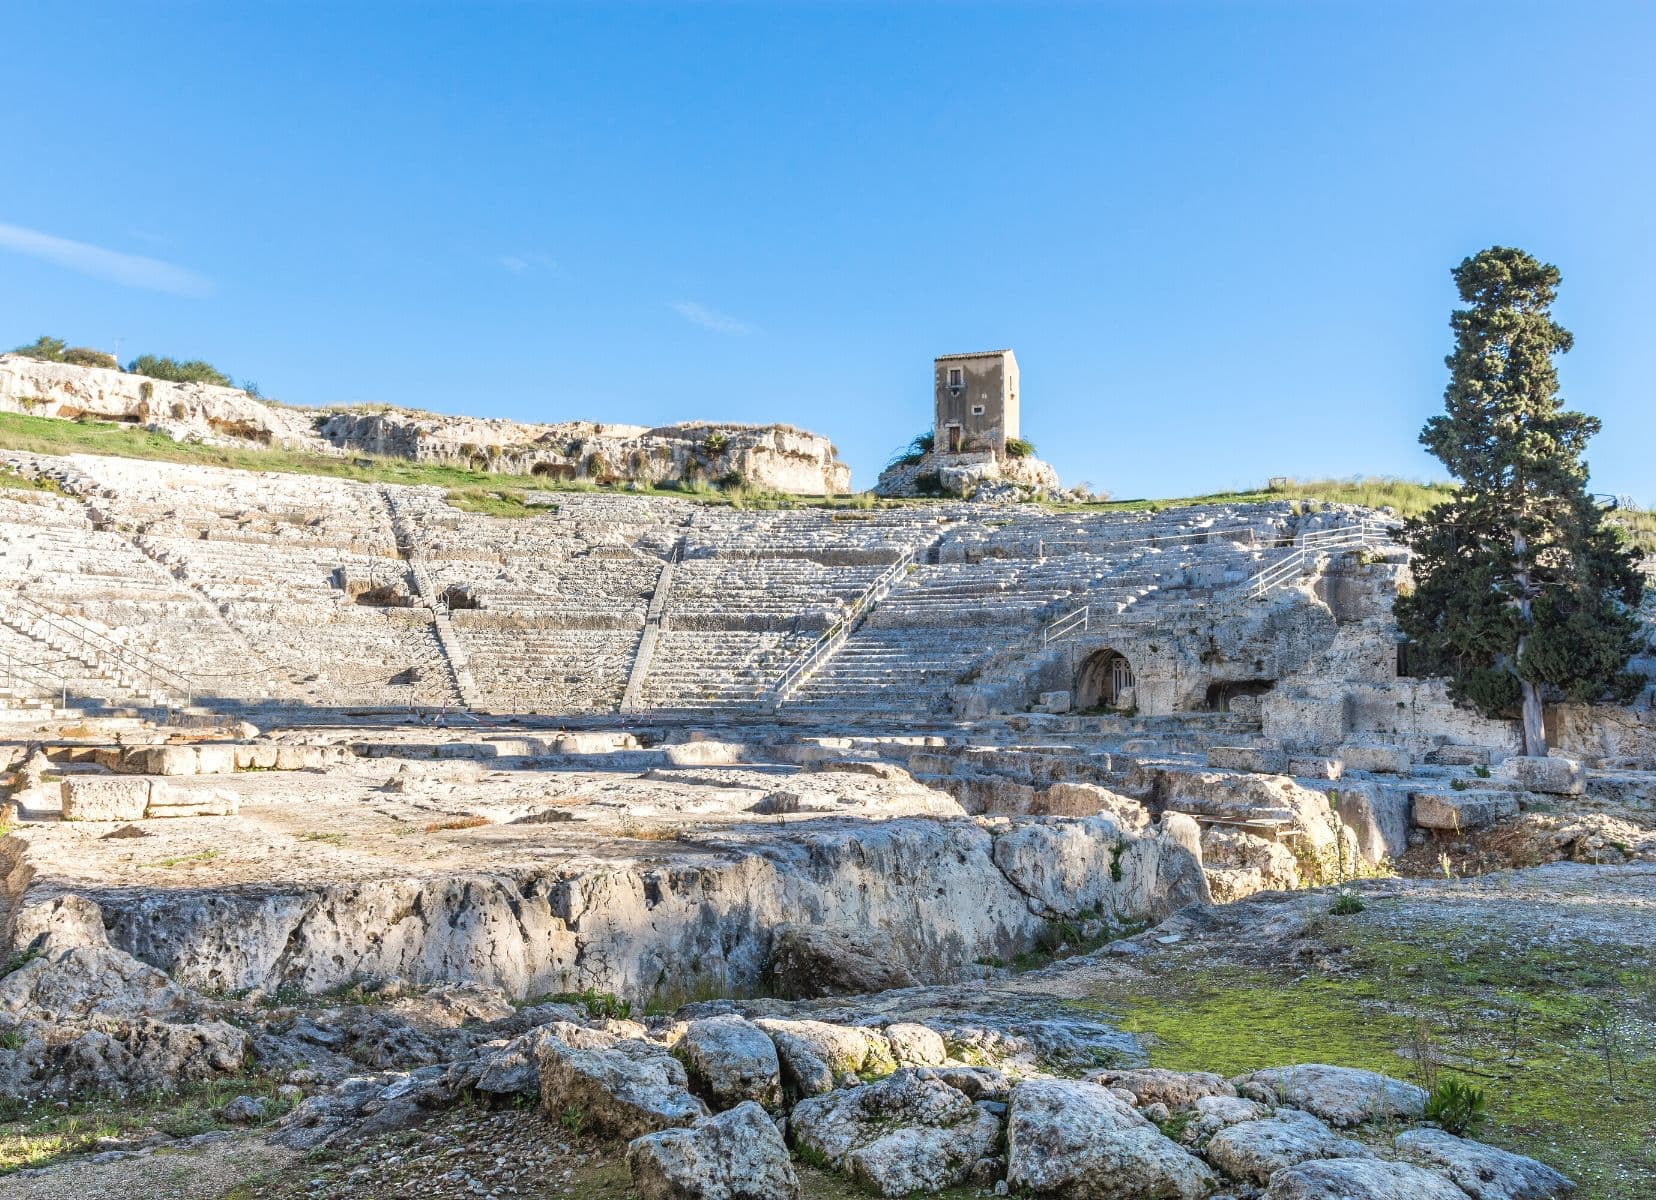 Sicily road trip: Syracuse Greek ampitheatre